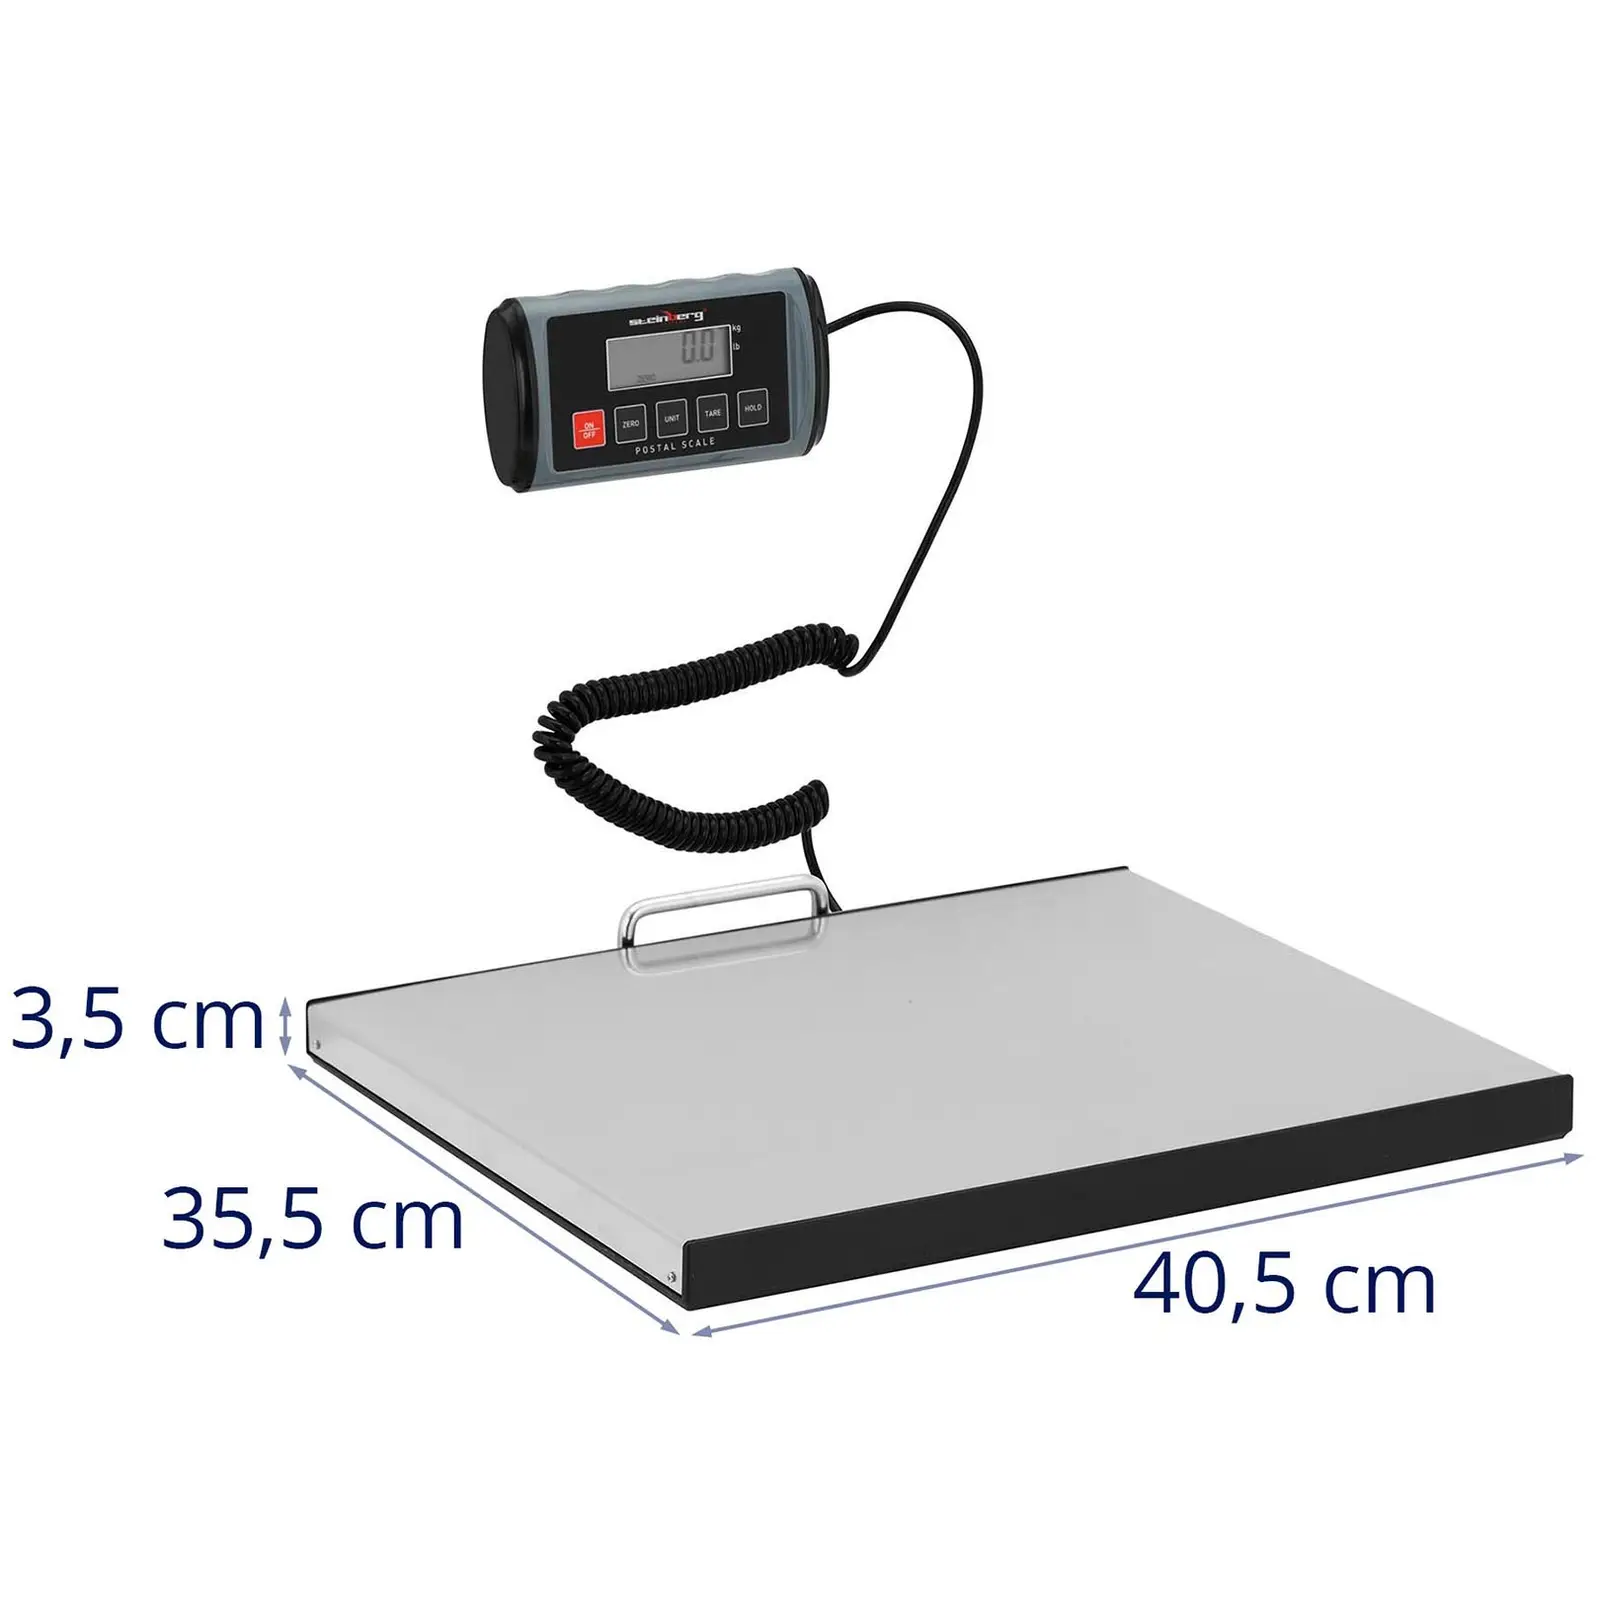 Paketwaage - 100 kg / 0,05 kg - 35,5 x 40,5 cm - externes LCD